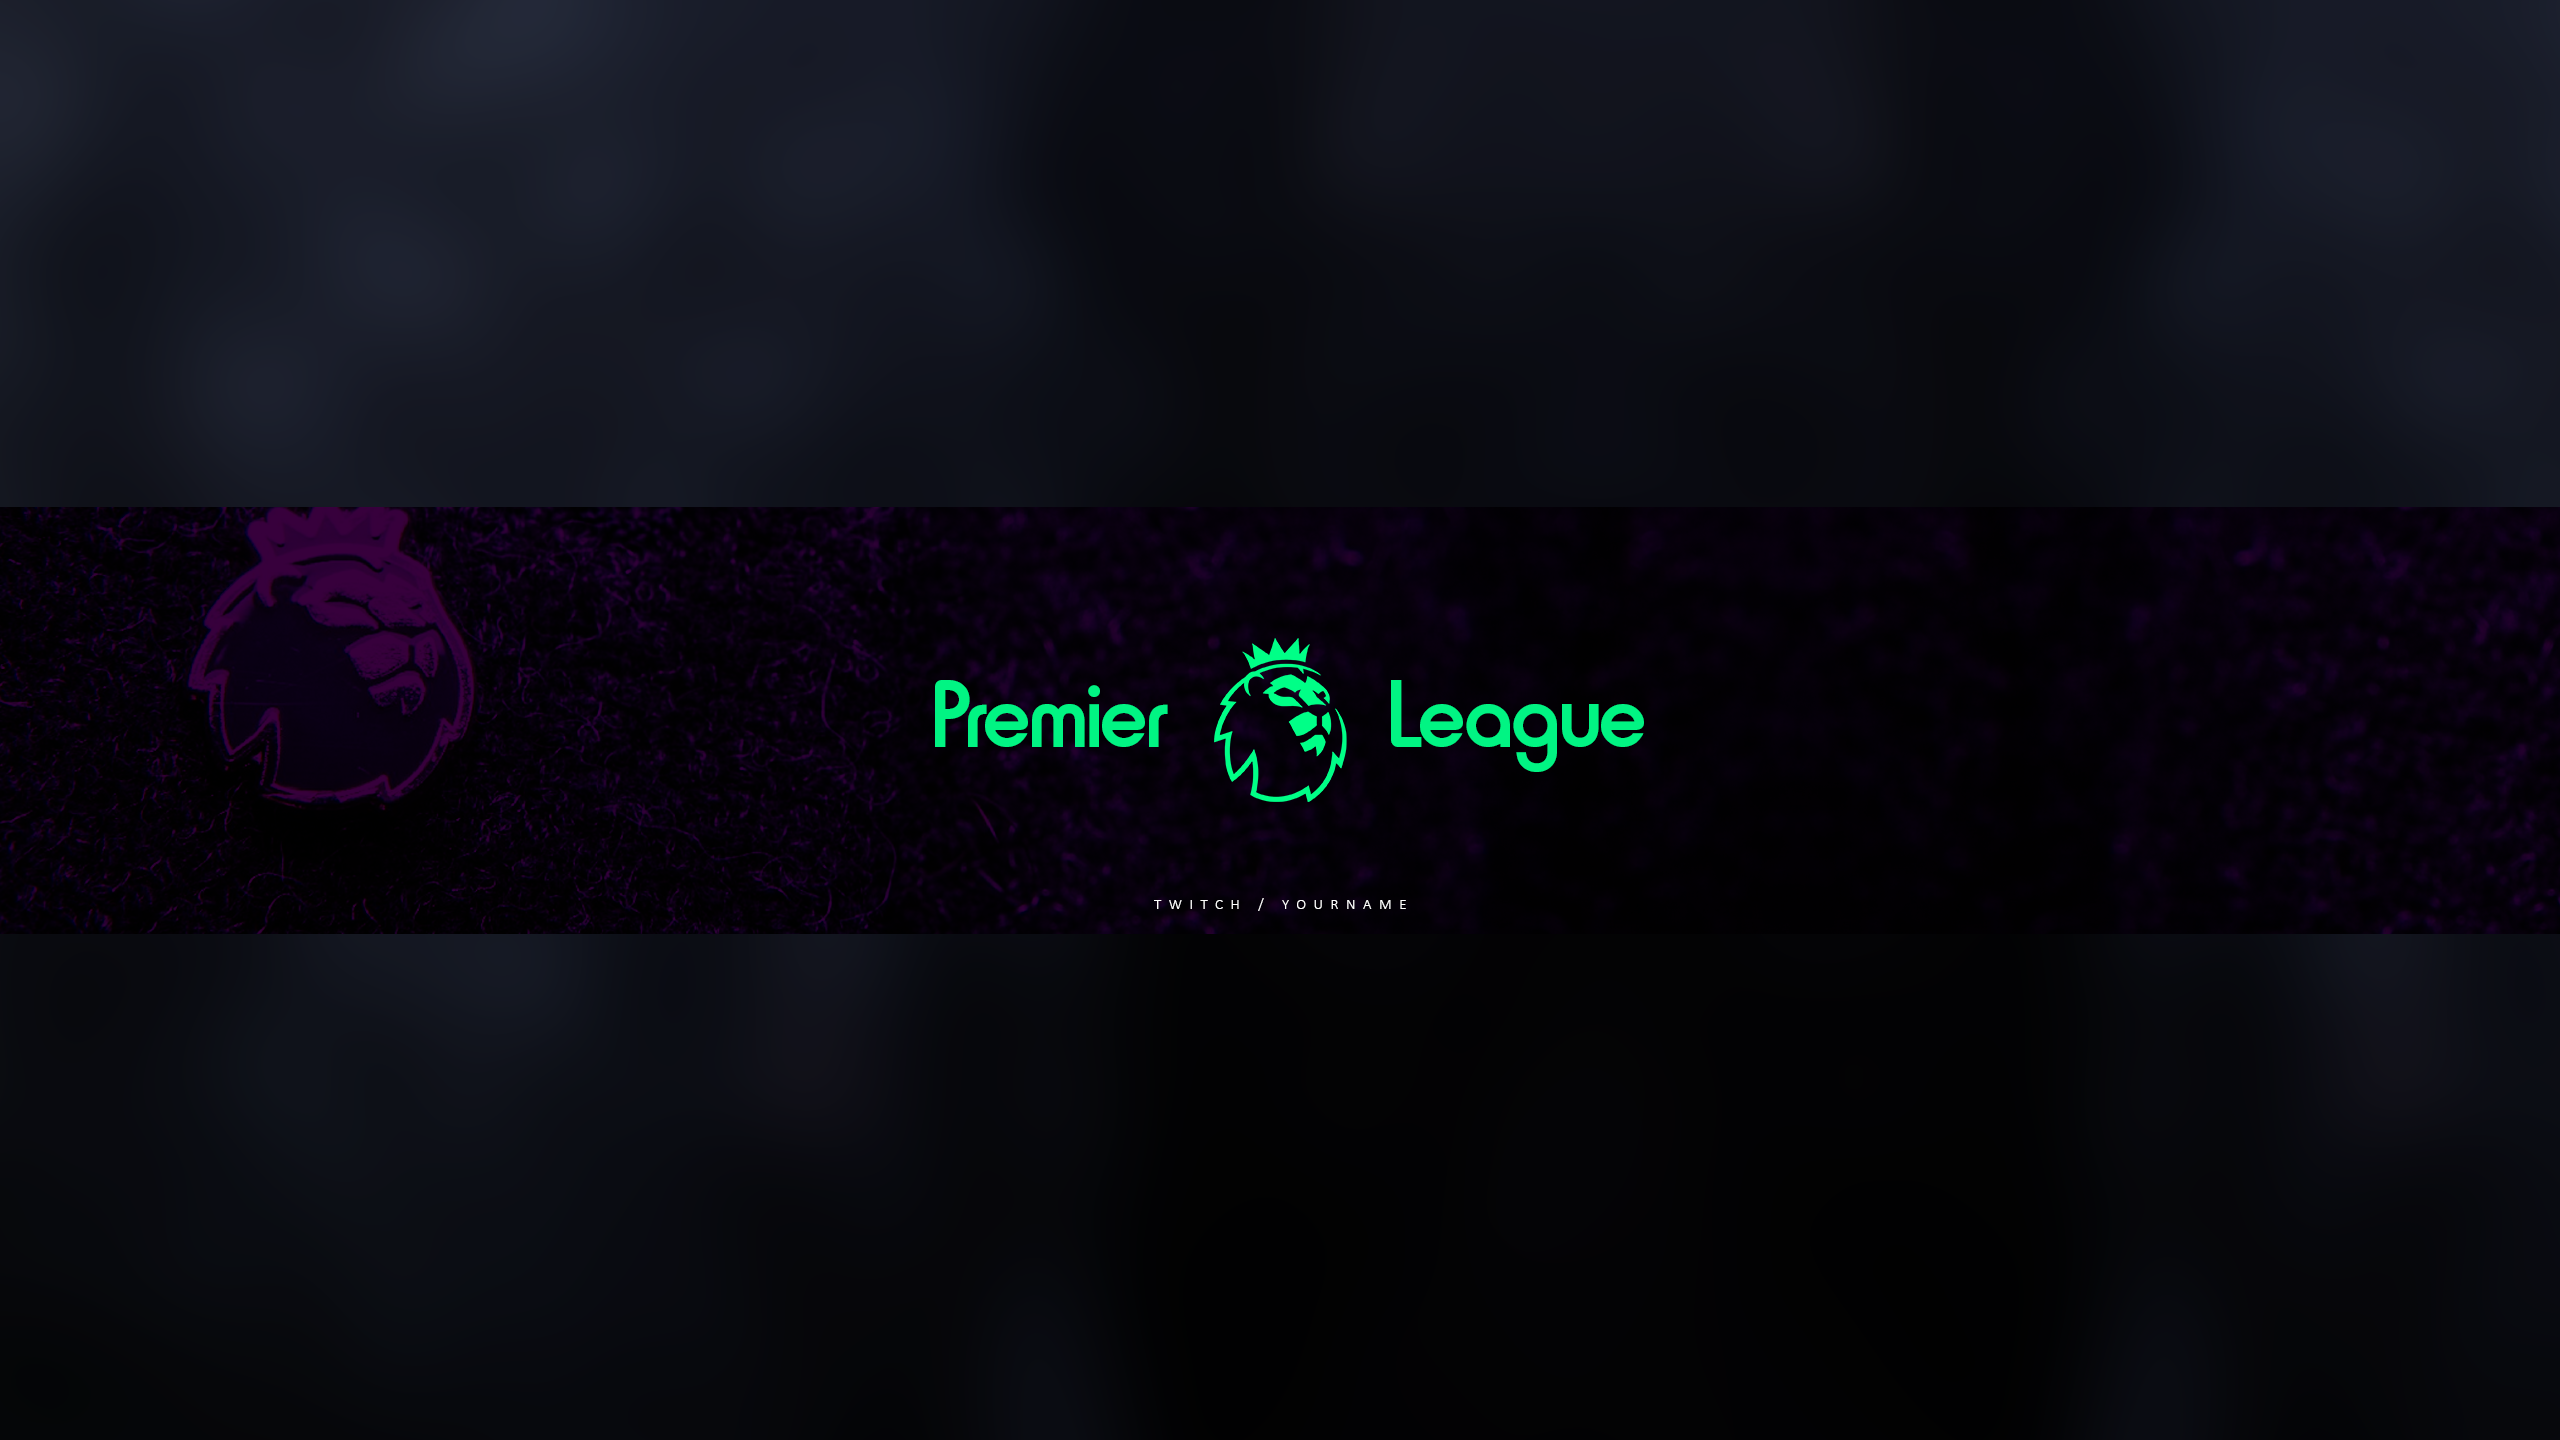 Premier League Banner